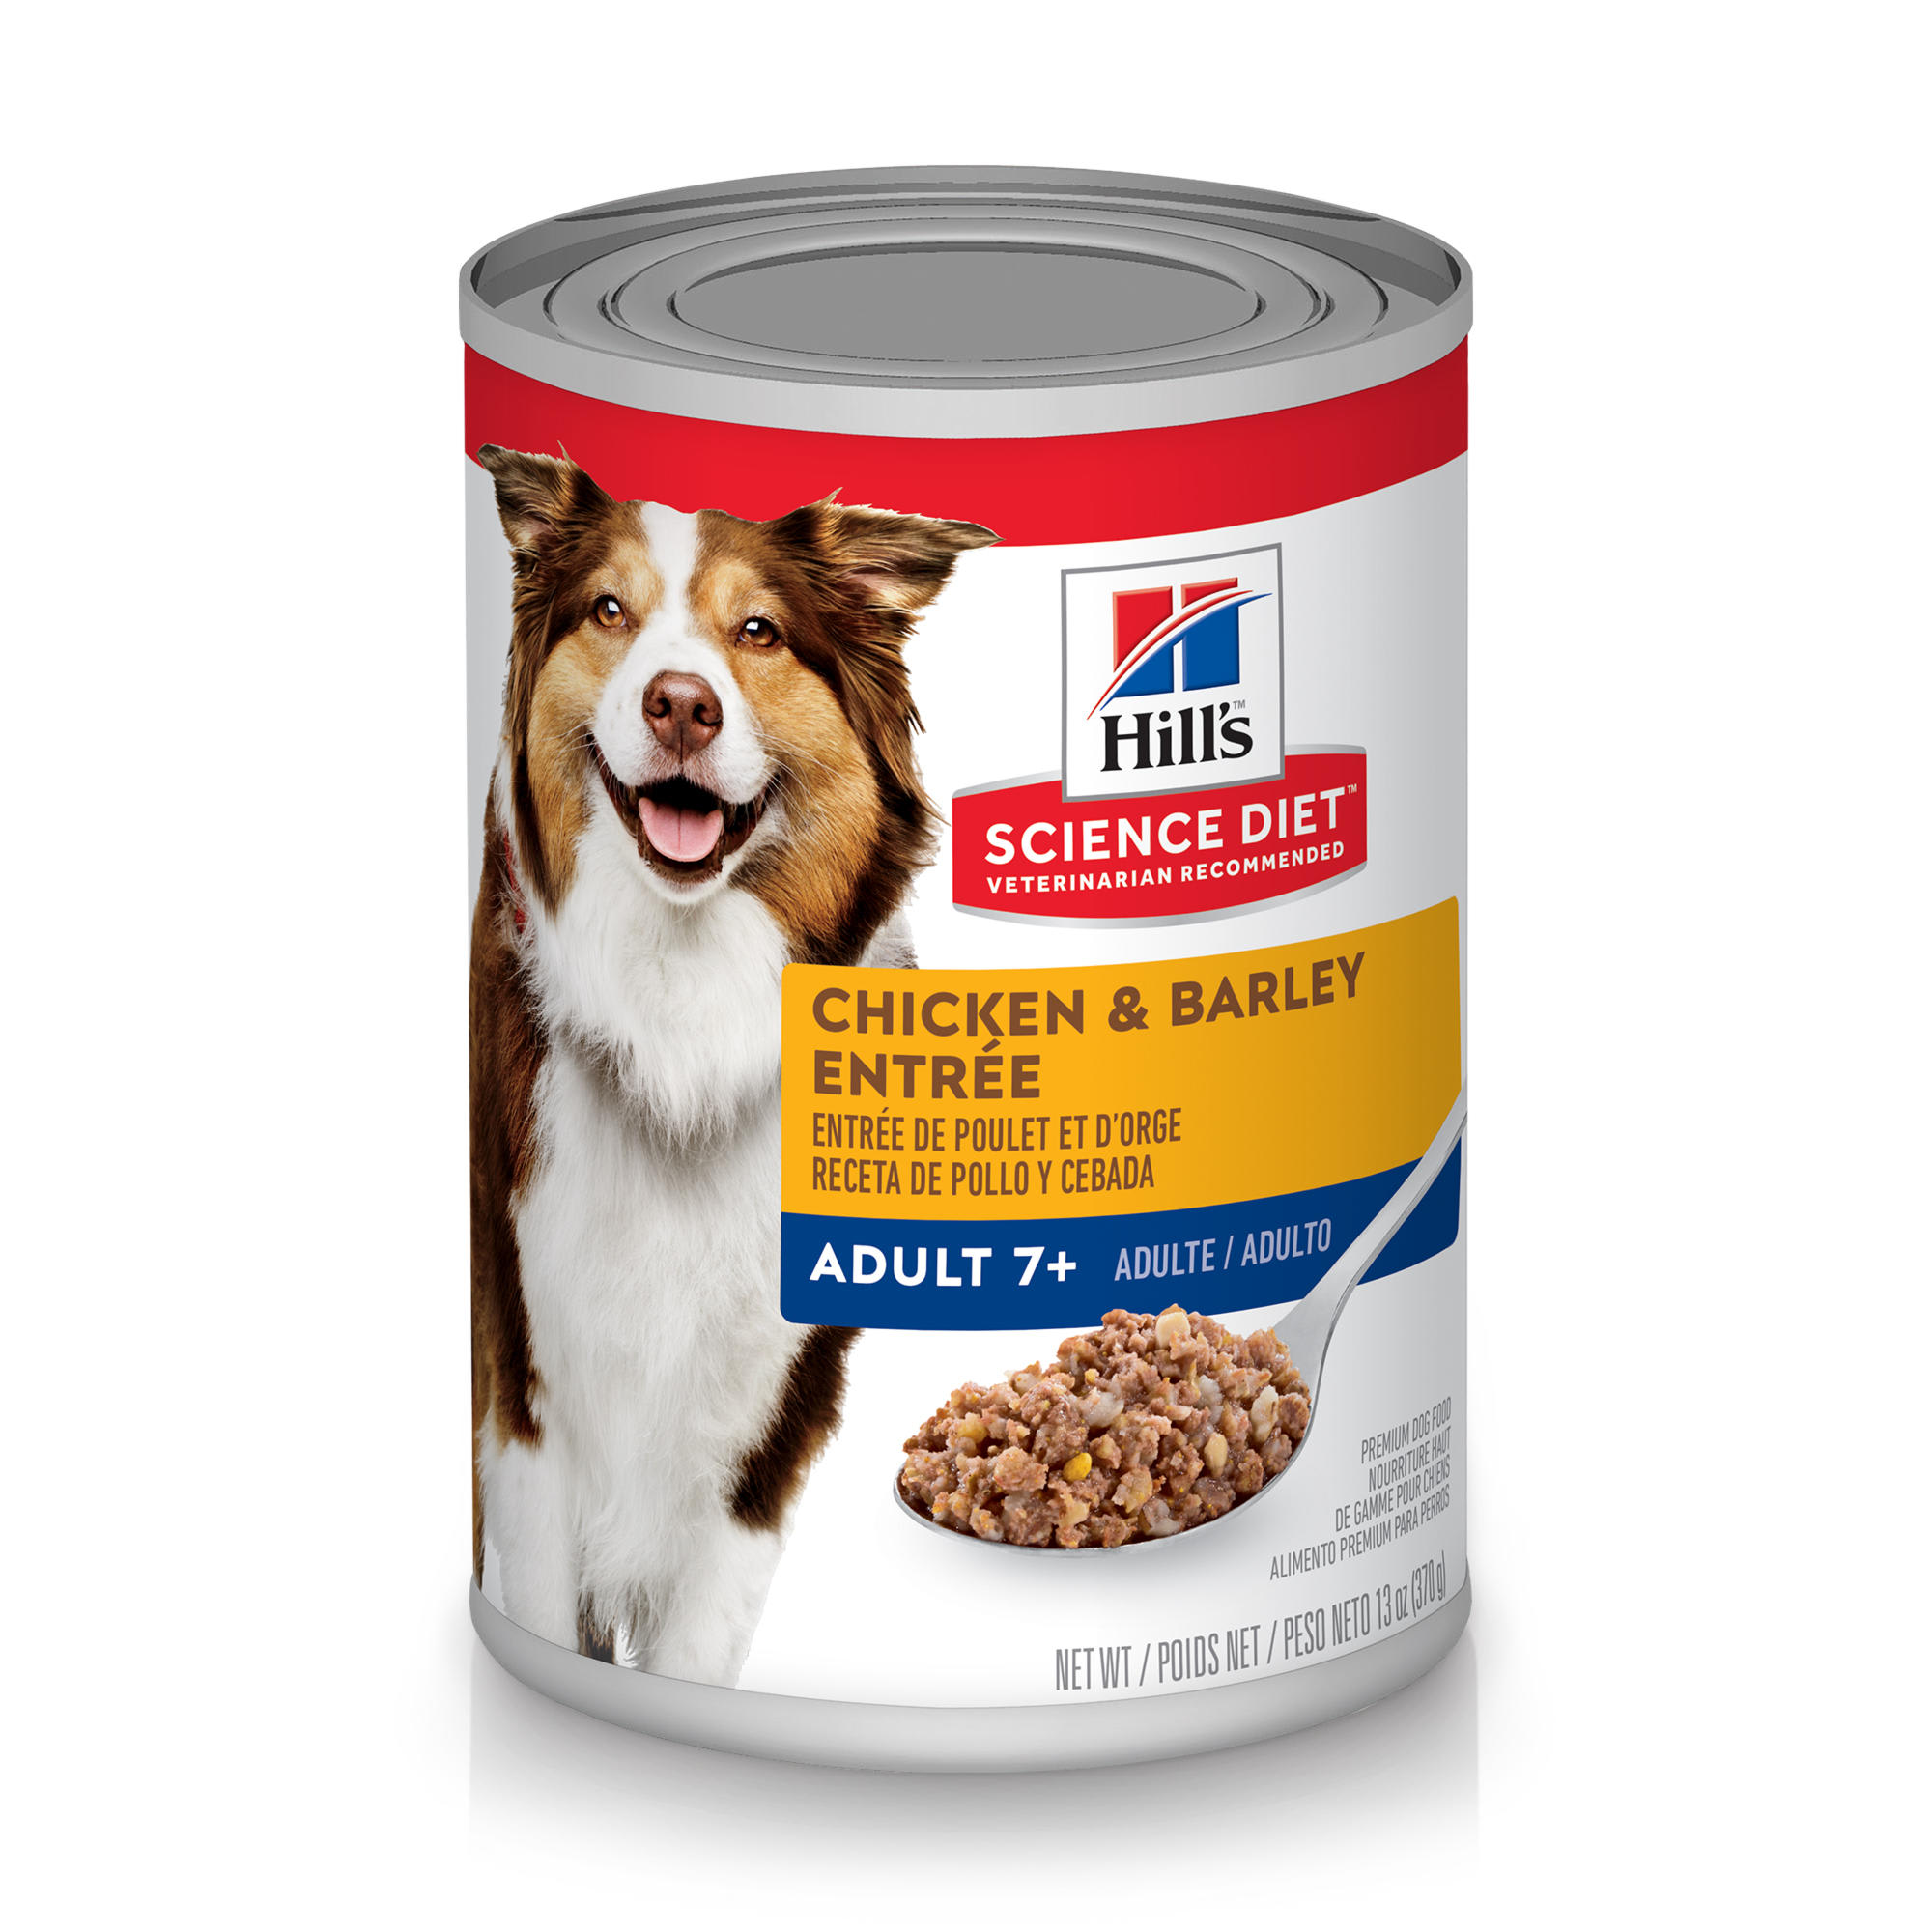 hills diet dog food